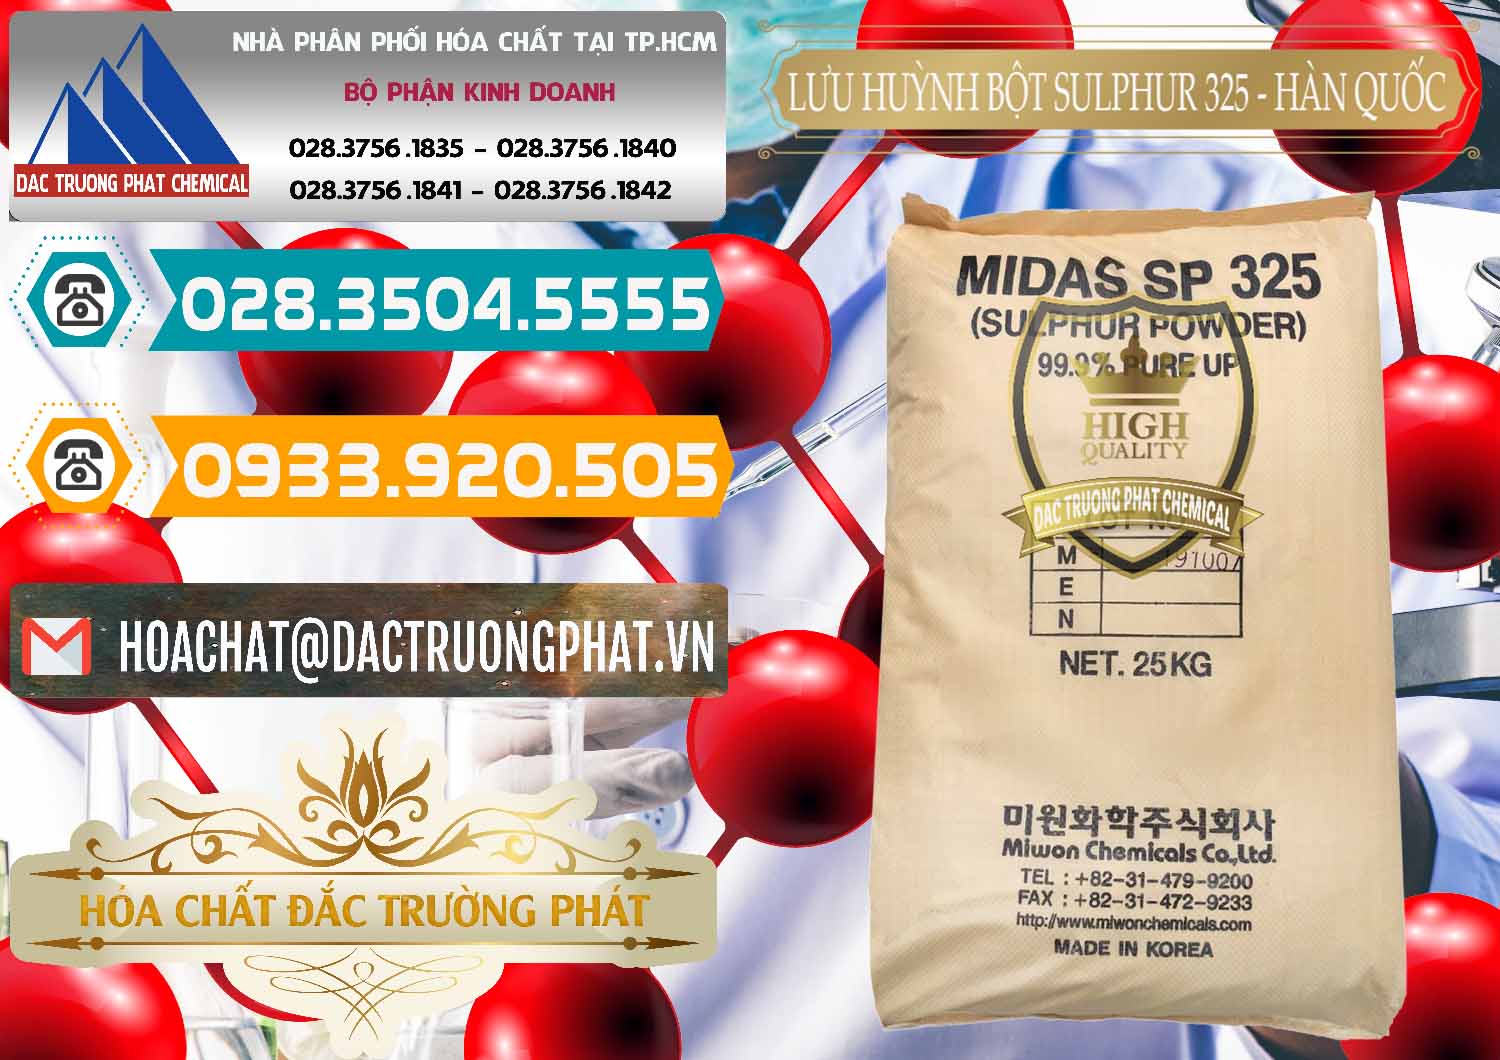 Bán & cung ứng Lưu huỳnh Bột - Sulfur Powder Midas SP 325 Hàn Quốc Korea - 0198 - Cty cung ứng và phân phối hóa chất tại TP.HCM - congtyhoachat.vn